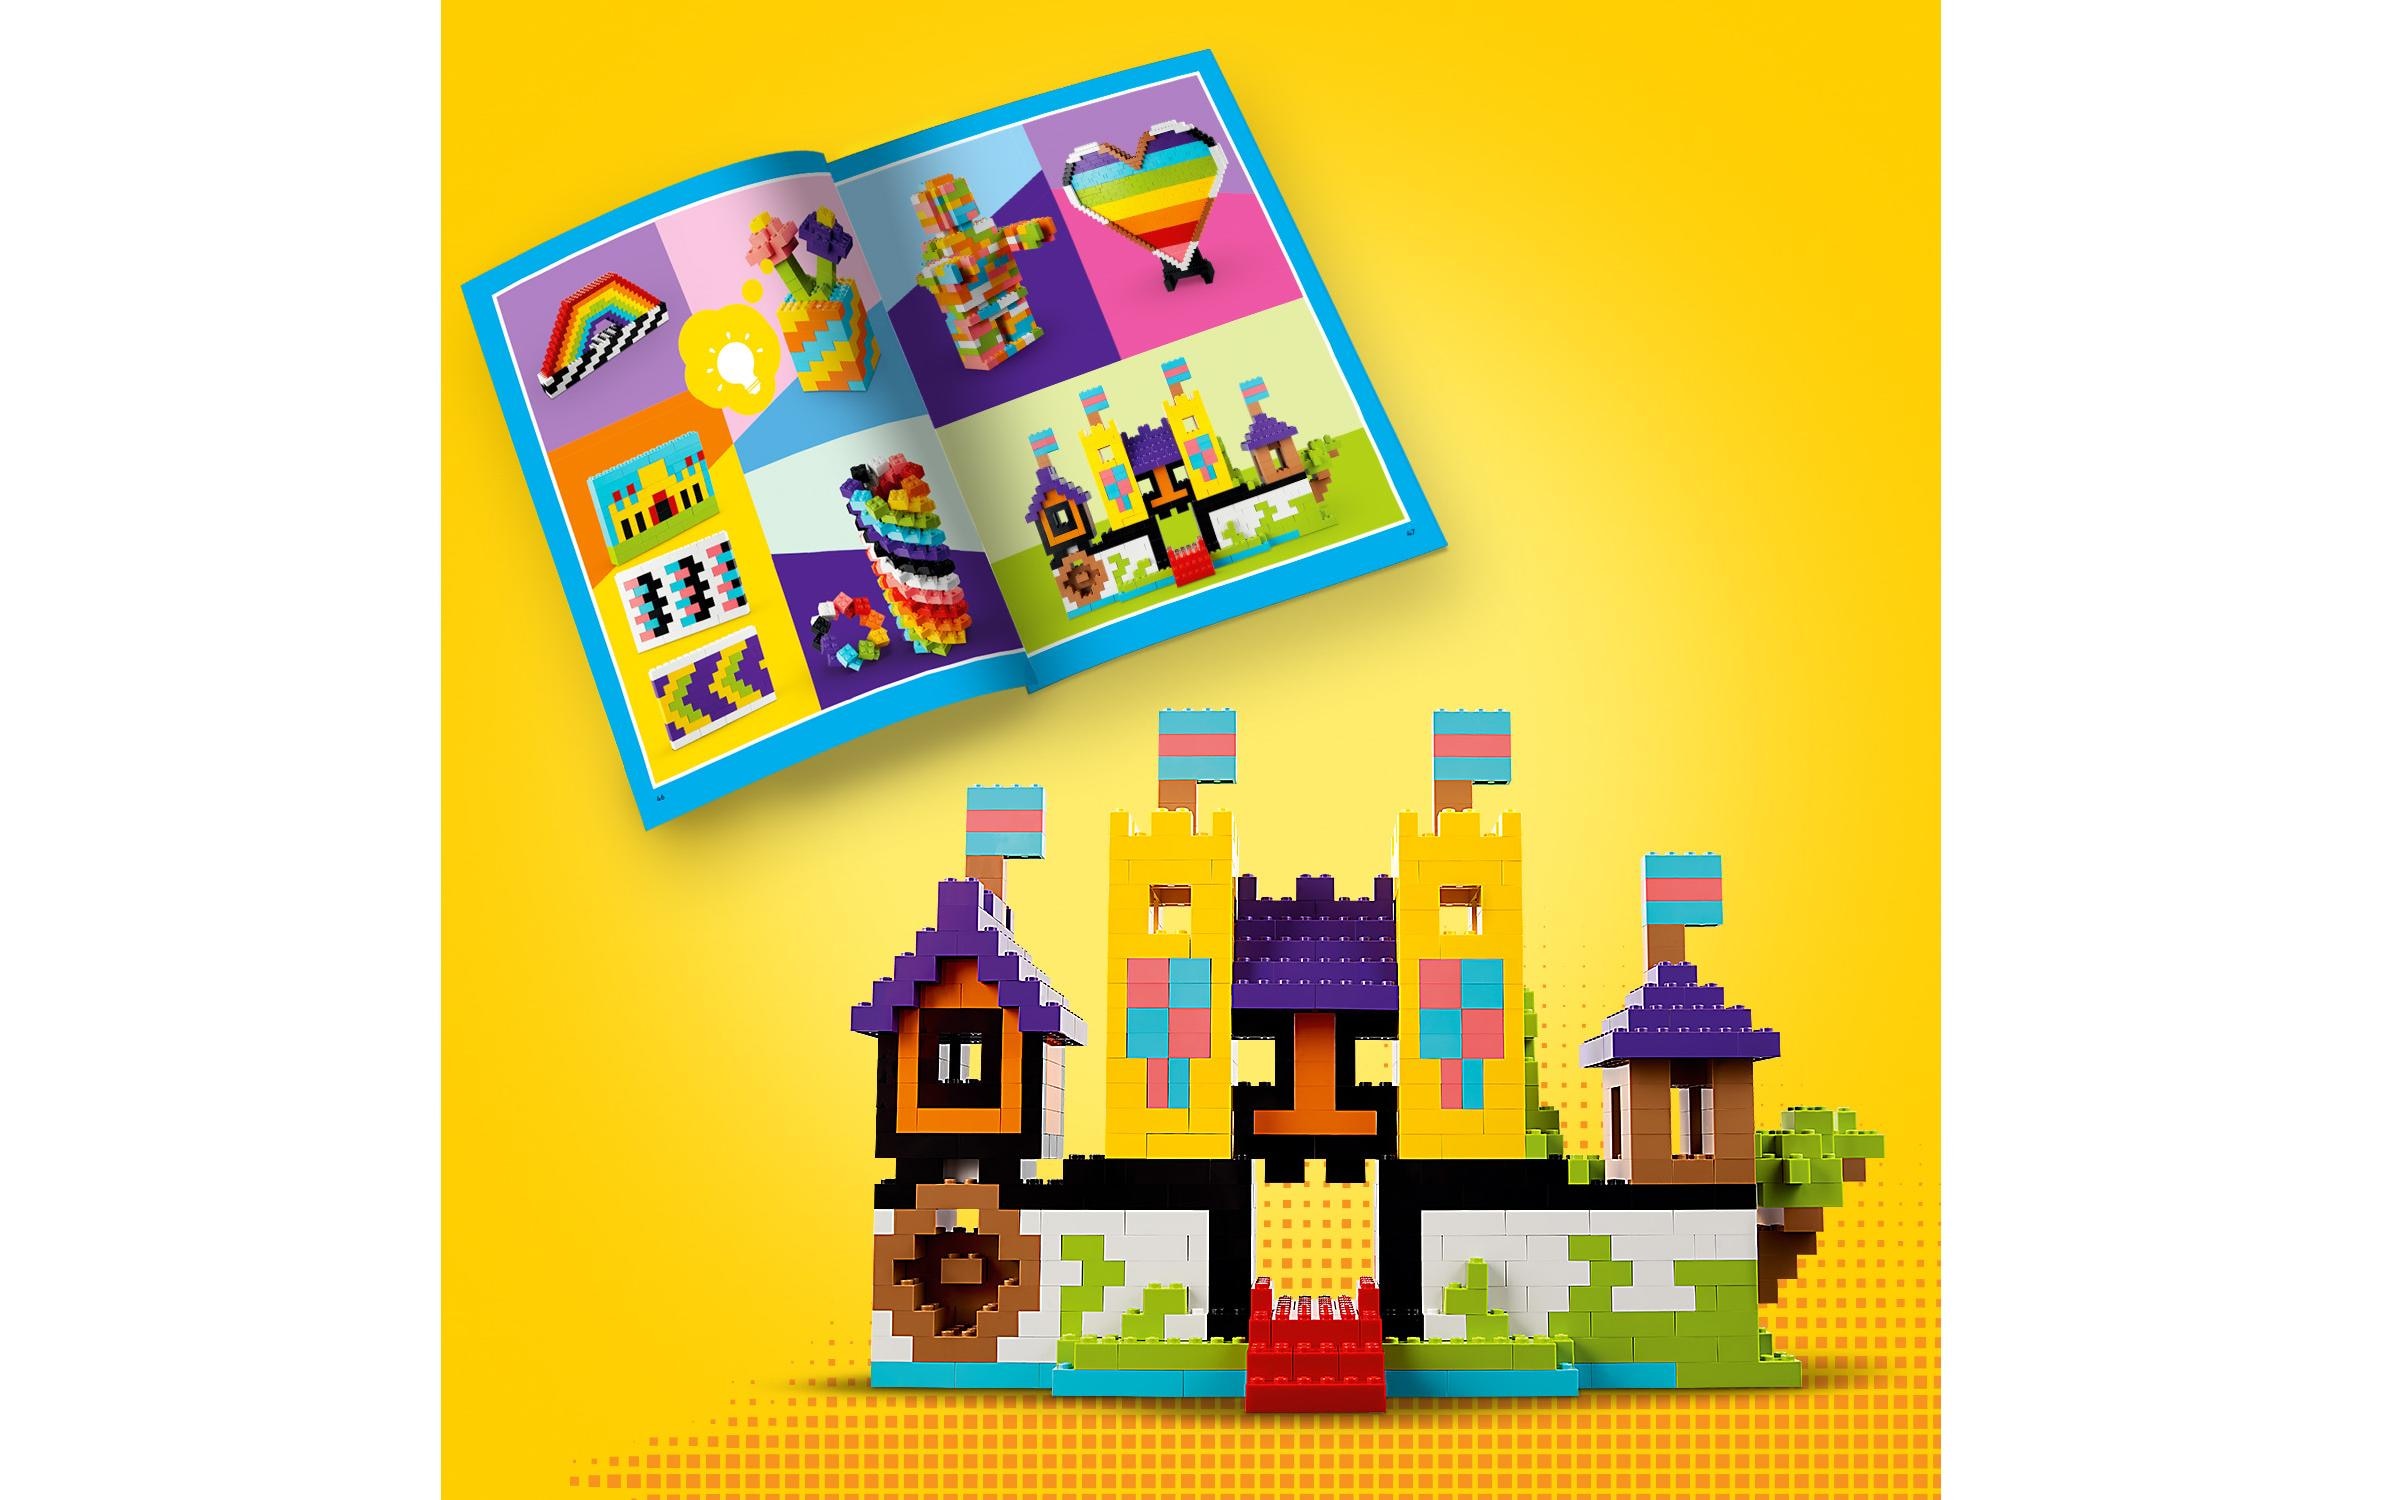 LEGO® Konstruktionsspielsteine »Kreativ-Bauset«